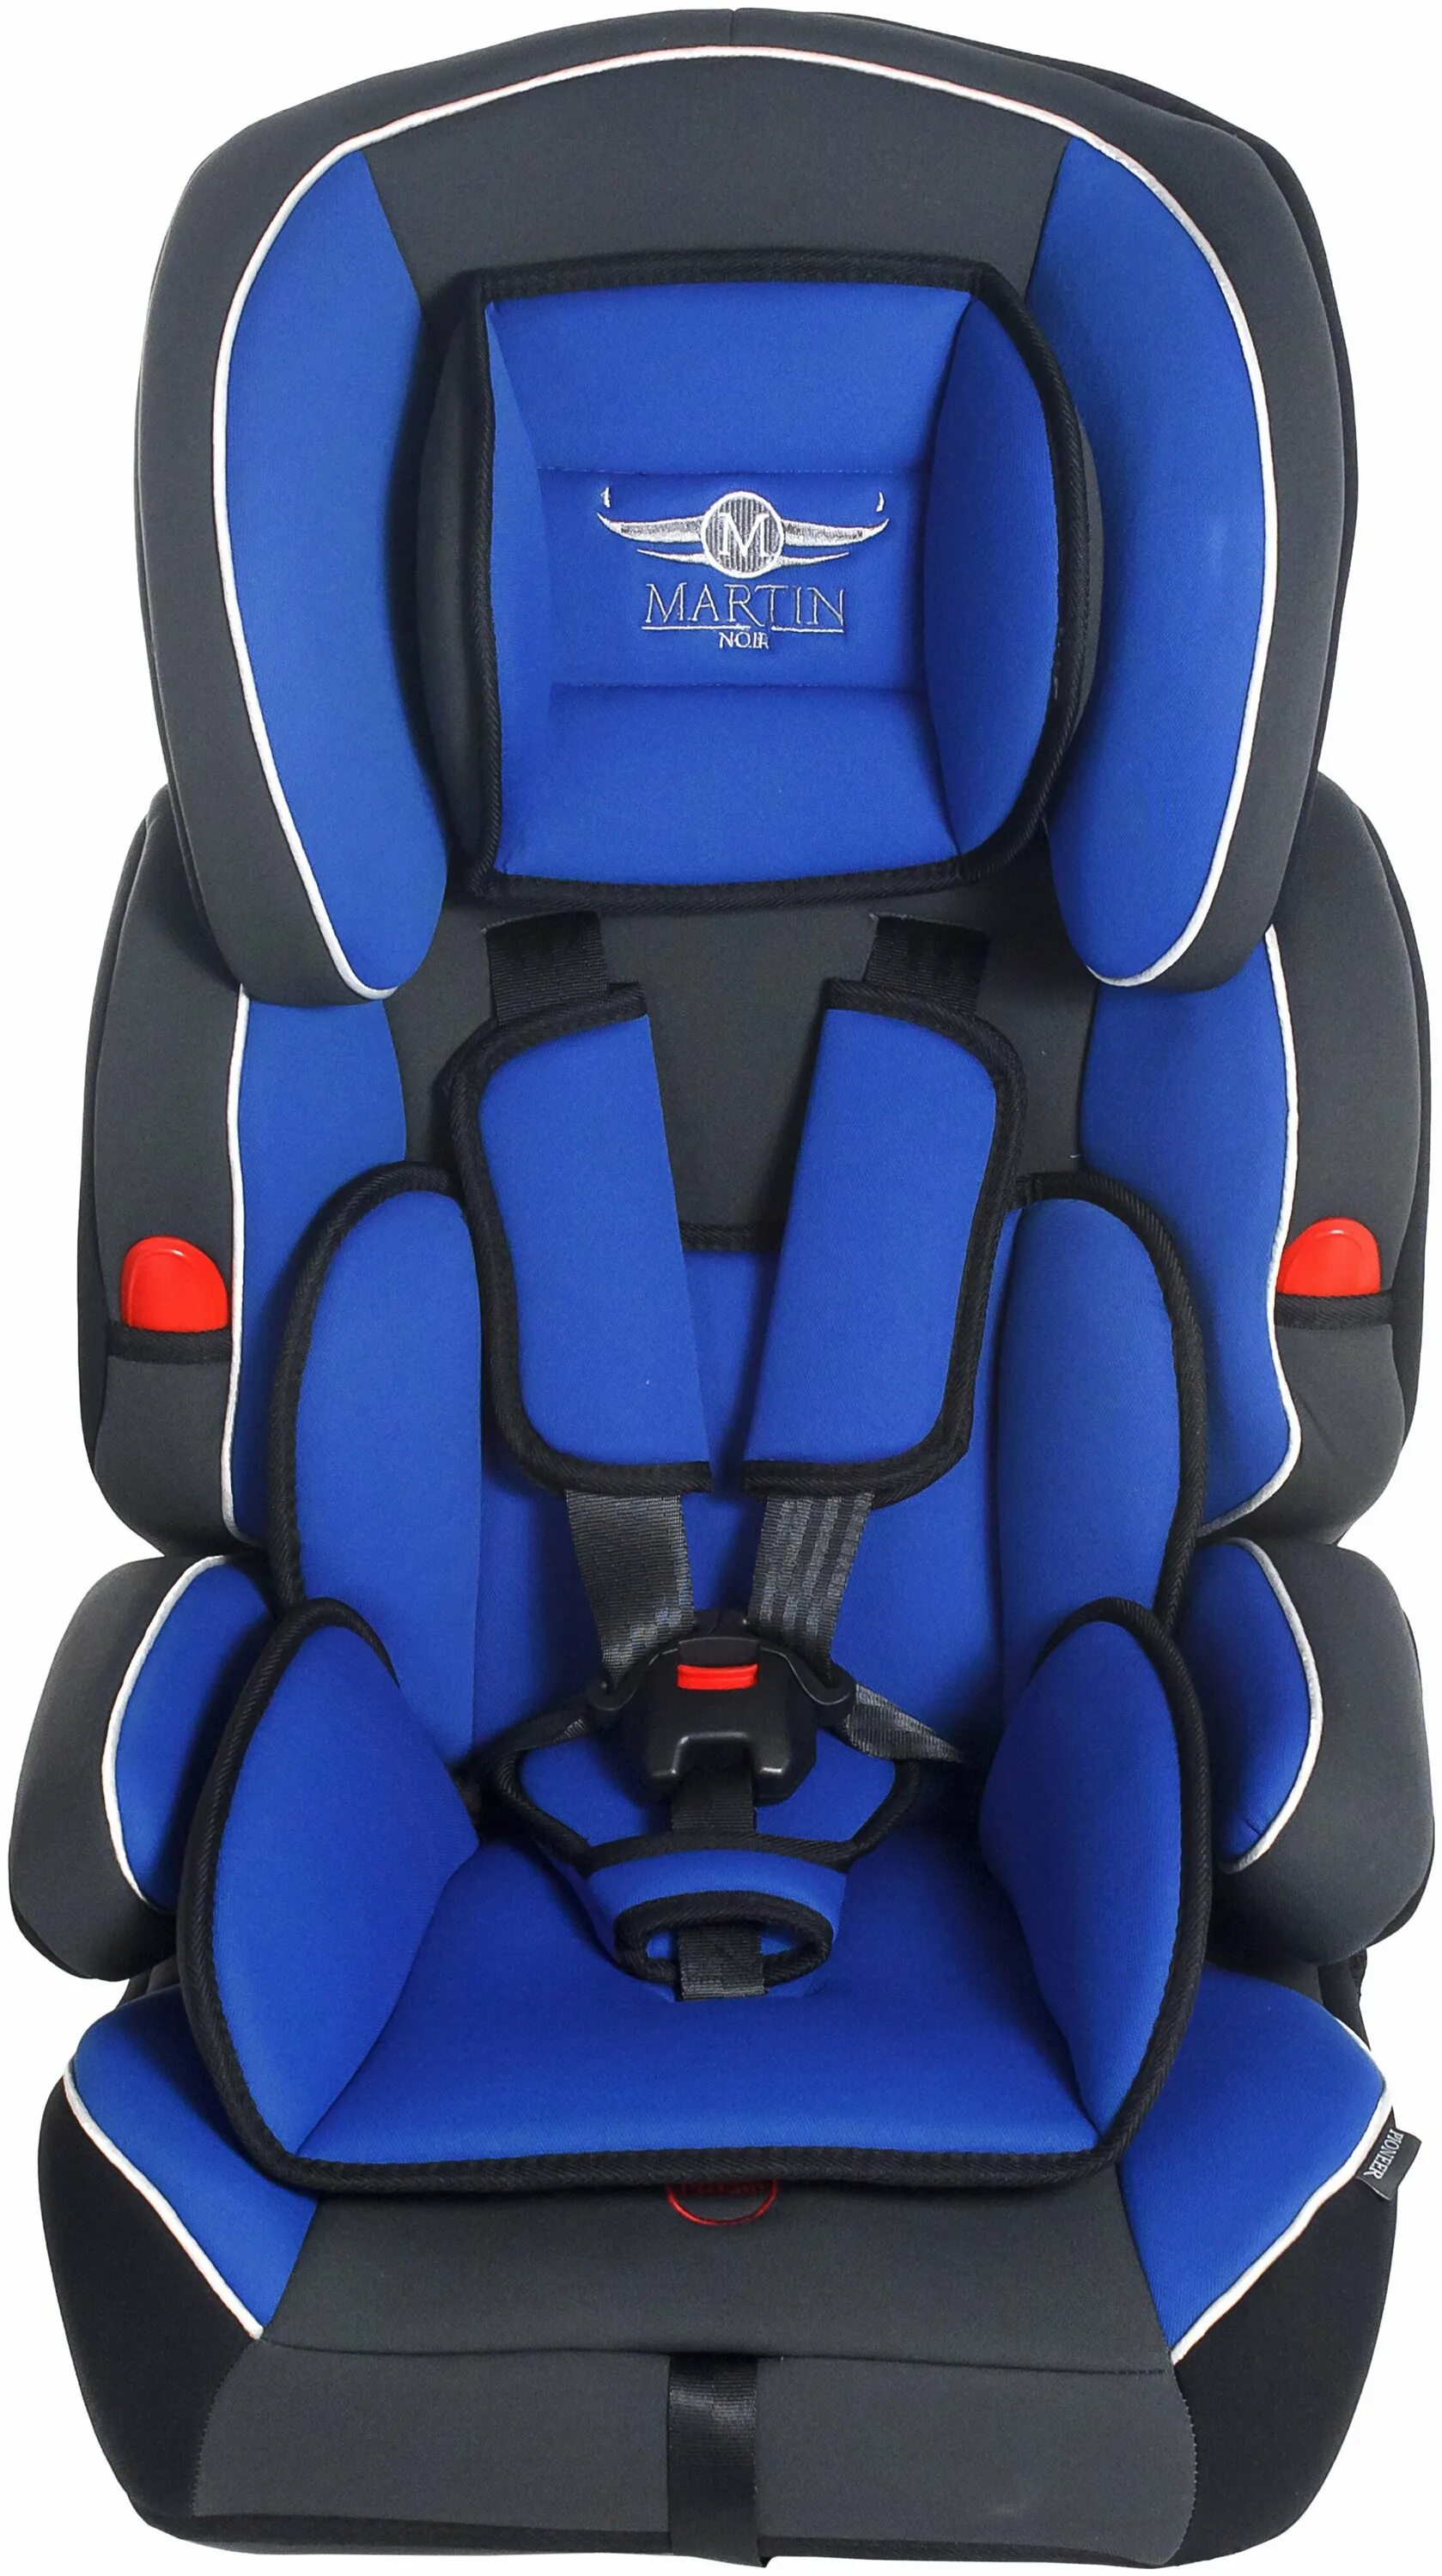 Автокресла синие. Автокресло группа 1/2/3 (9-36 кг) Martin Noir Pioneer. Автокресло синее. Детское кресло синее.